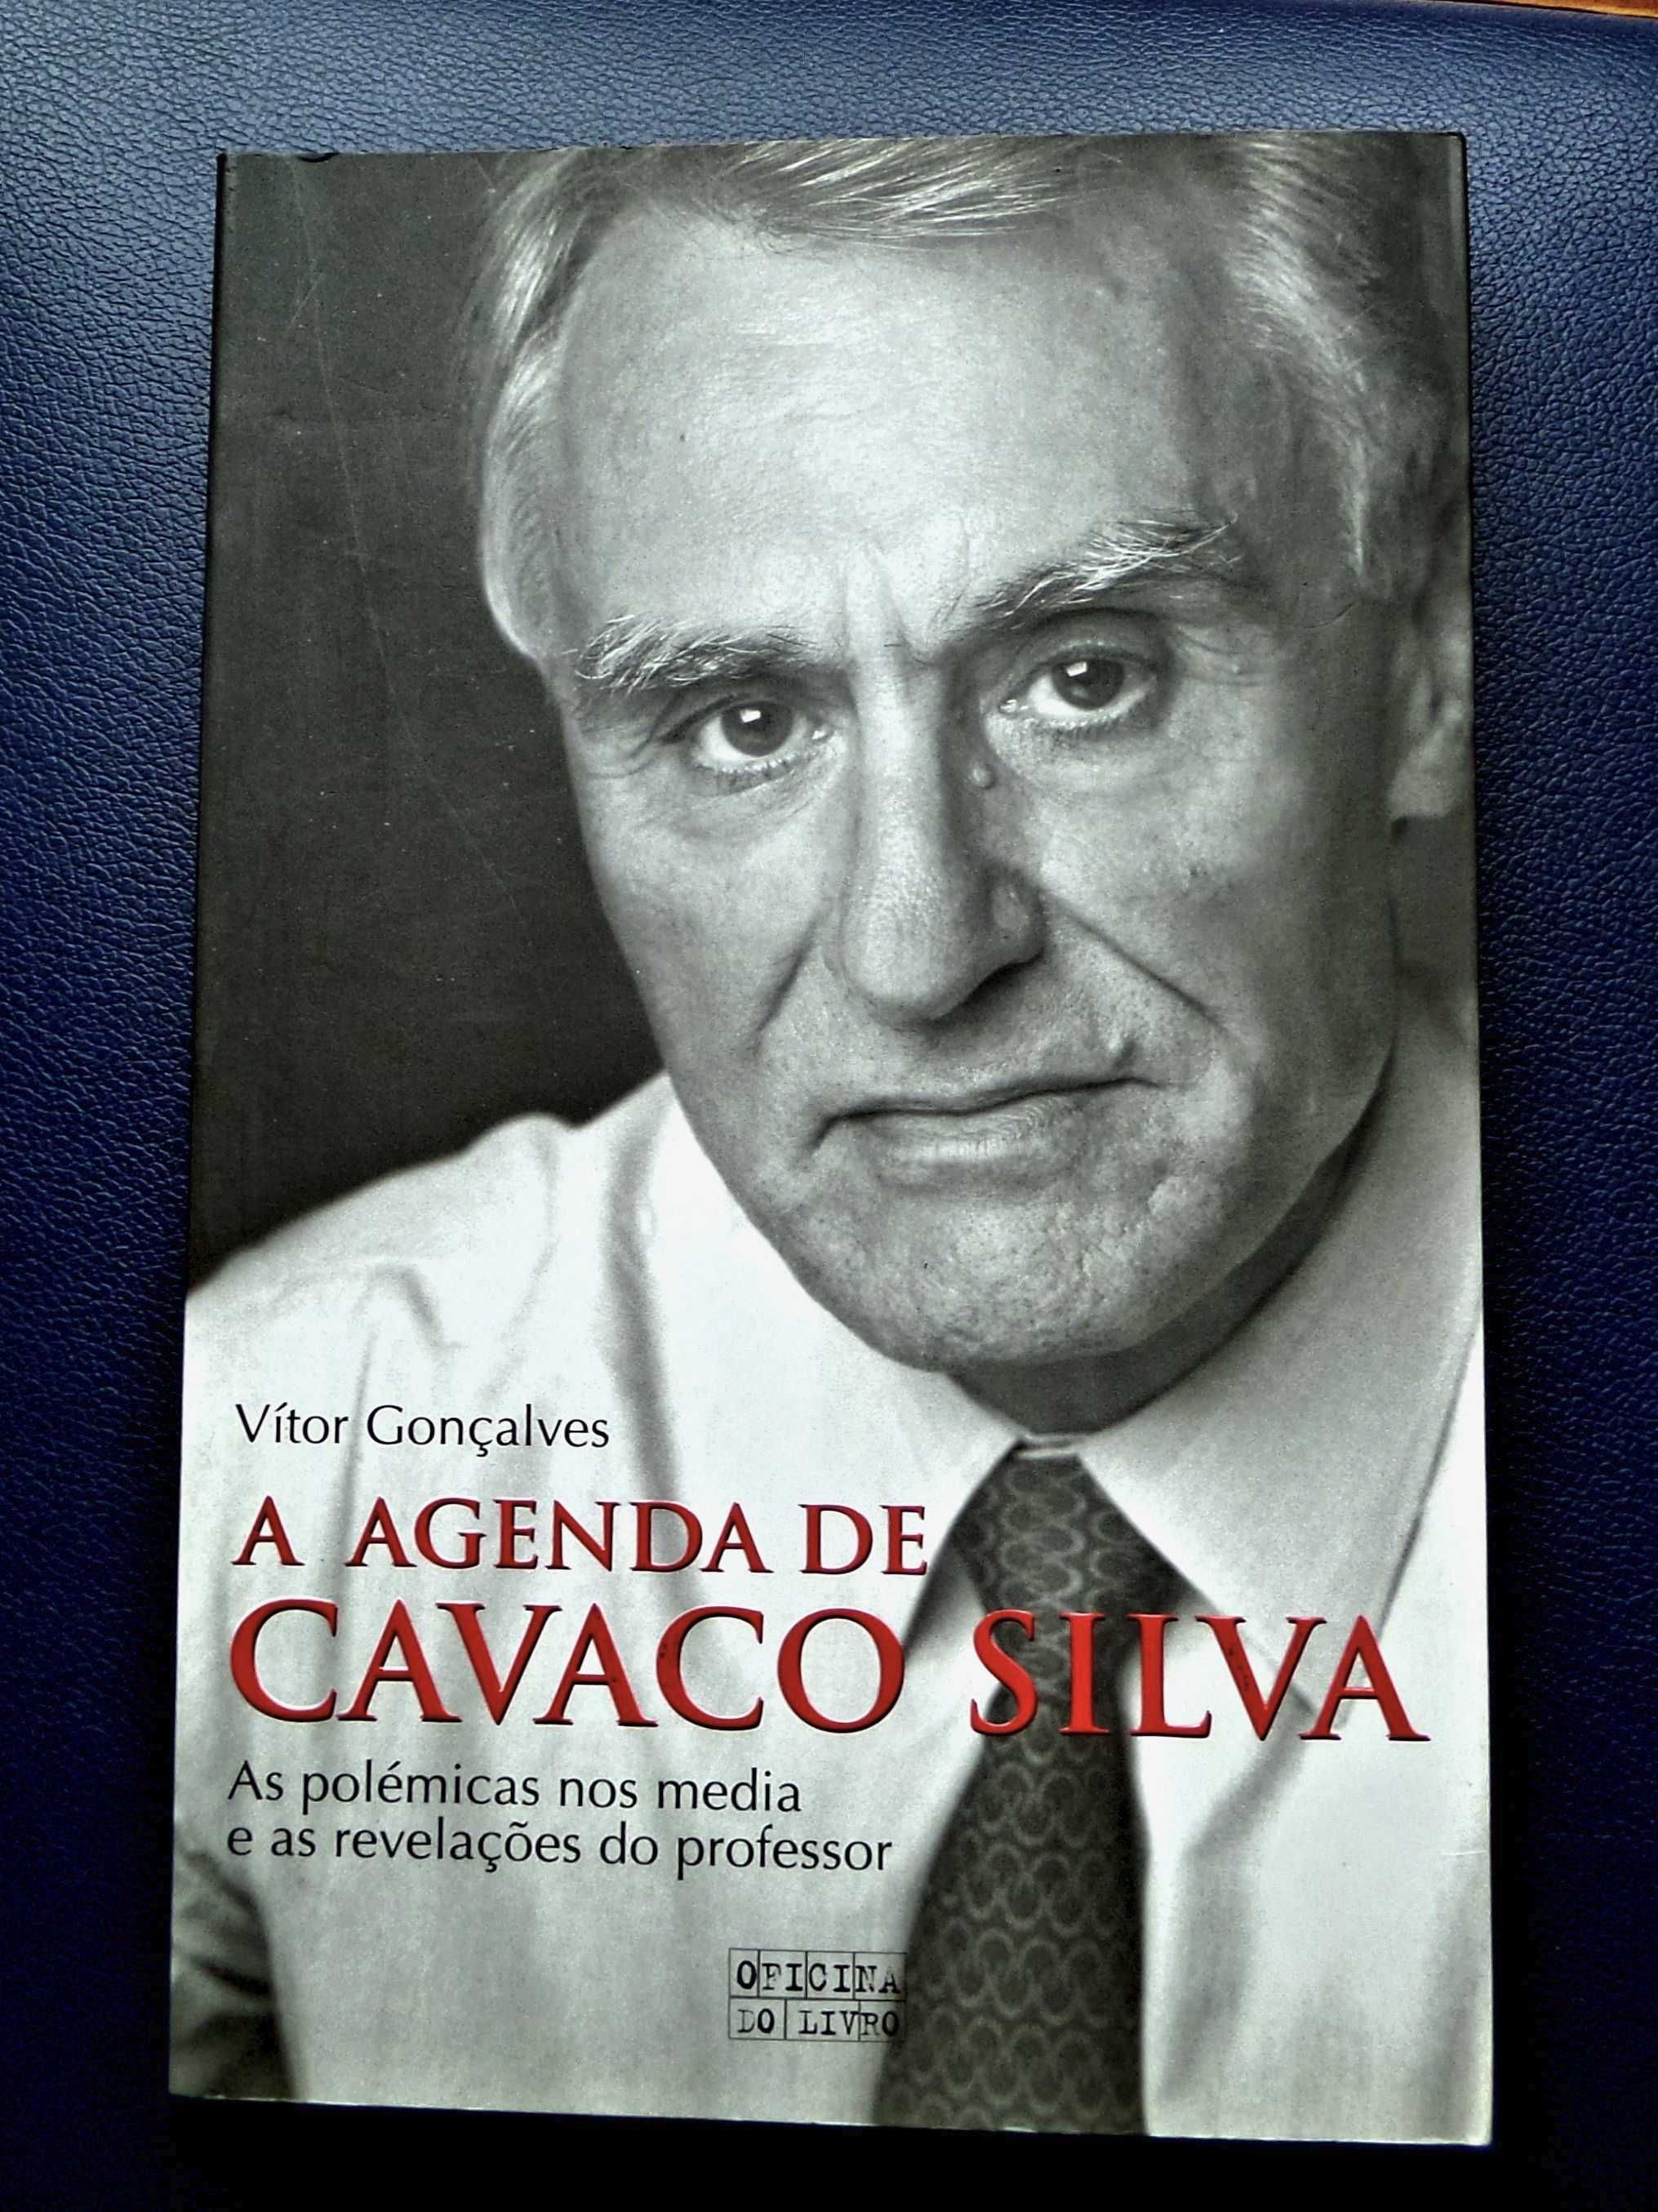 A Agenda de Cavaco Silva
de Vítor Gonçalves Loureiro